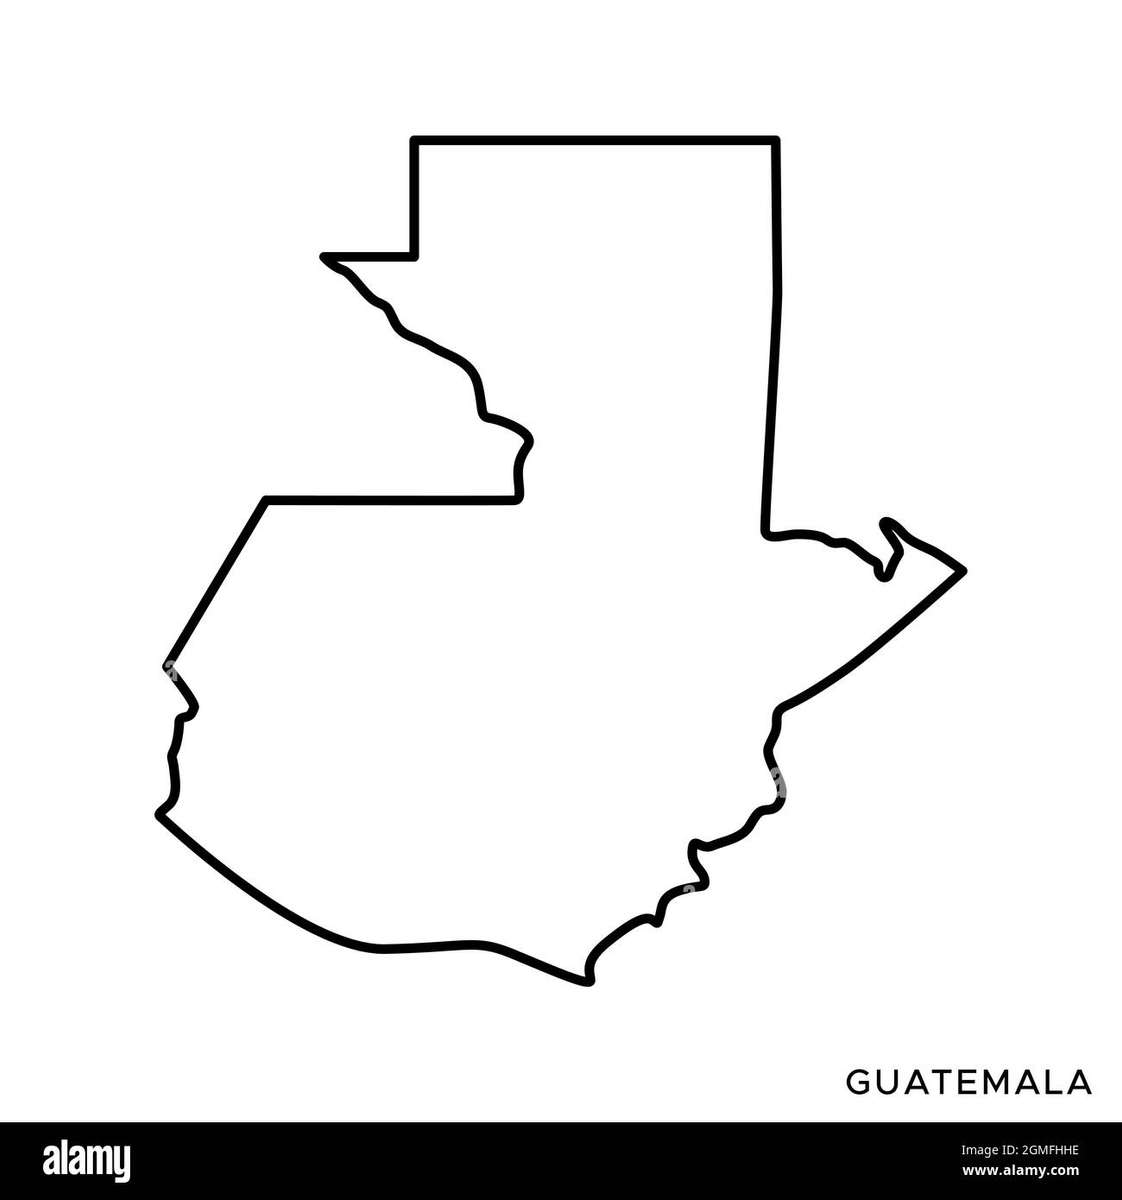 A Guatemalai Köztársaság térképe online puzzle